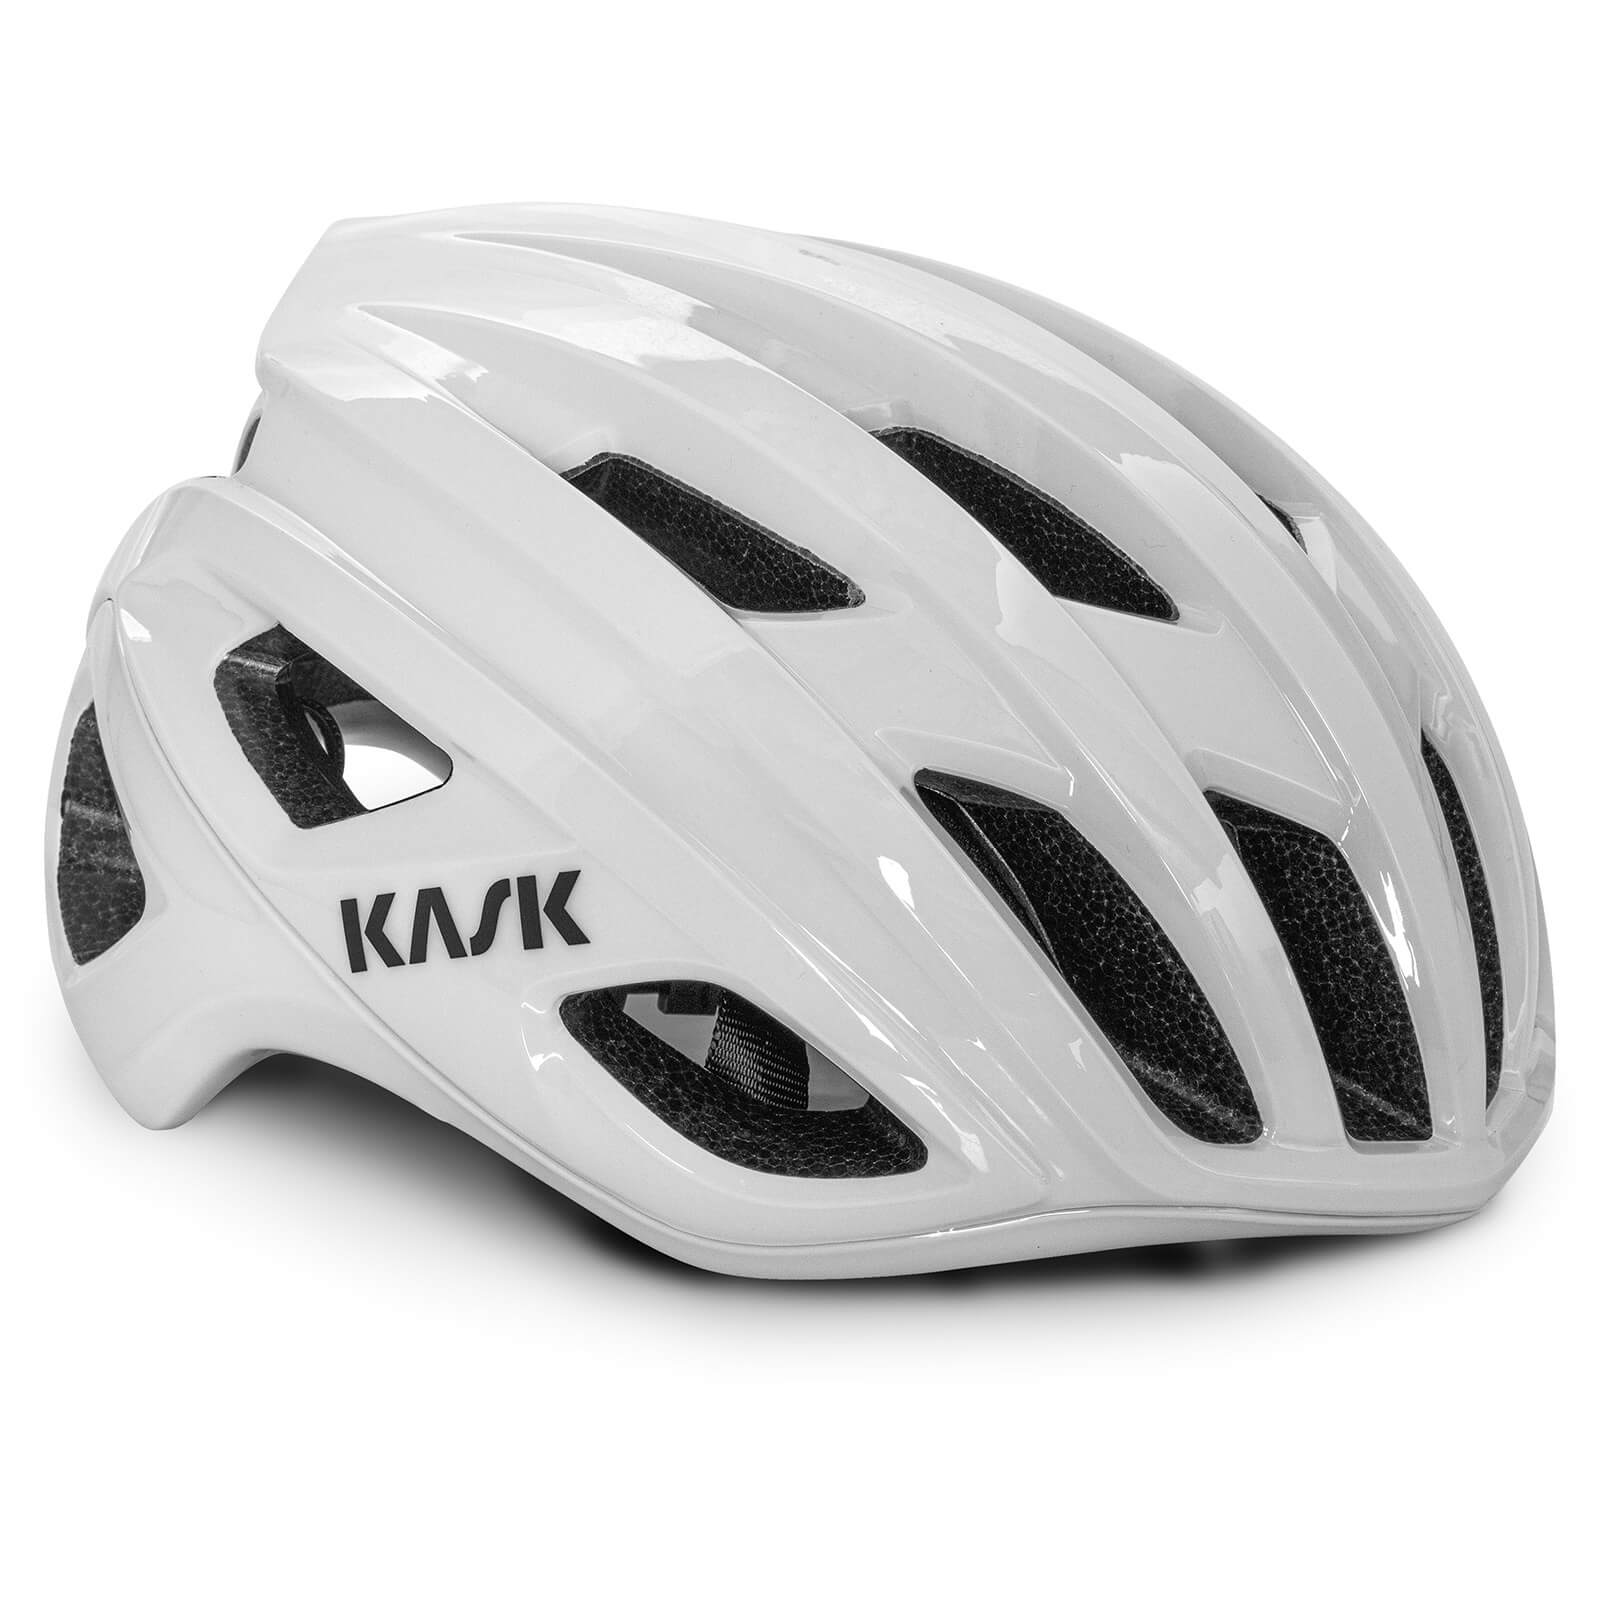 Kask Mojito³ Road Helmet - M - White